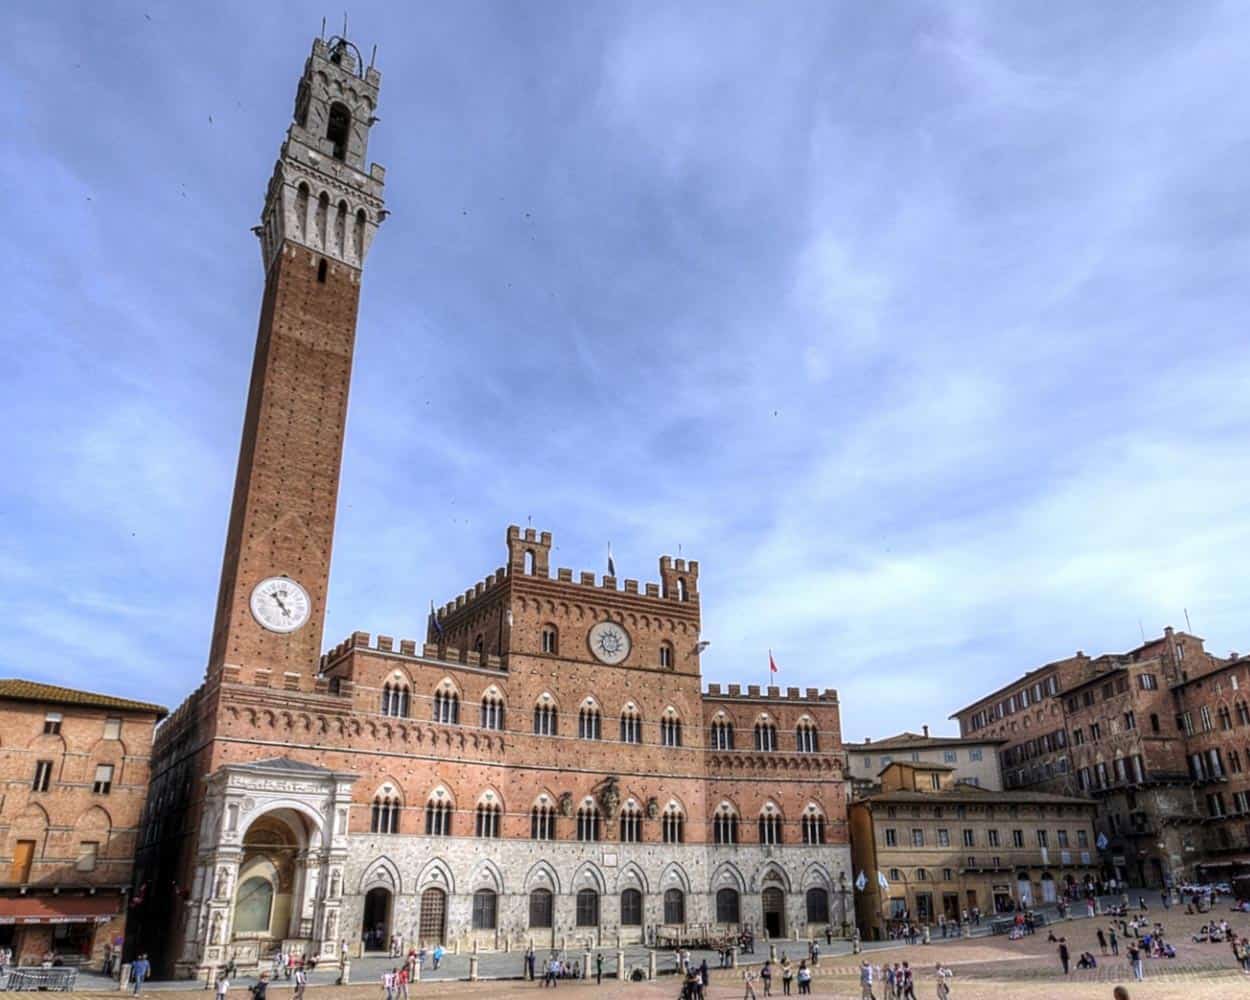 Explore Siena in Tuscany Italy with Villa Nobile Cortona